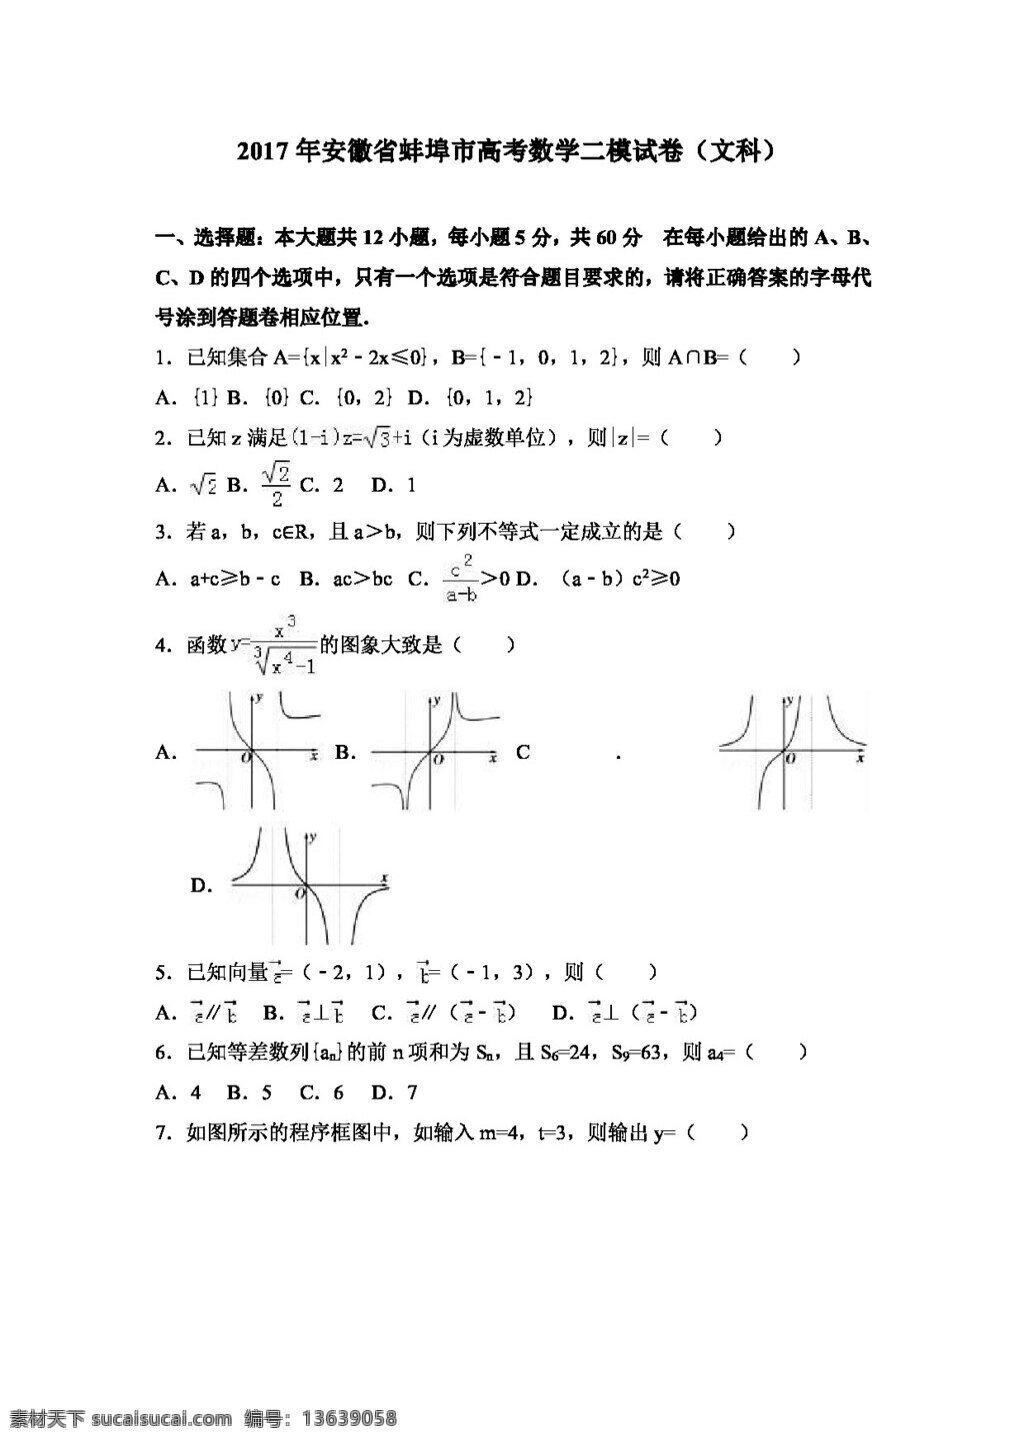 数学 人教 版 2017 年 安徽省 蚌埠市 高考 二 模 试卷 文科 高考专区 人教版